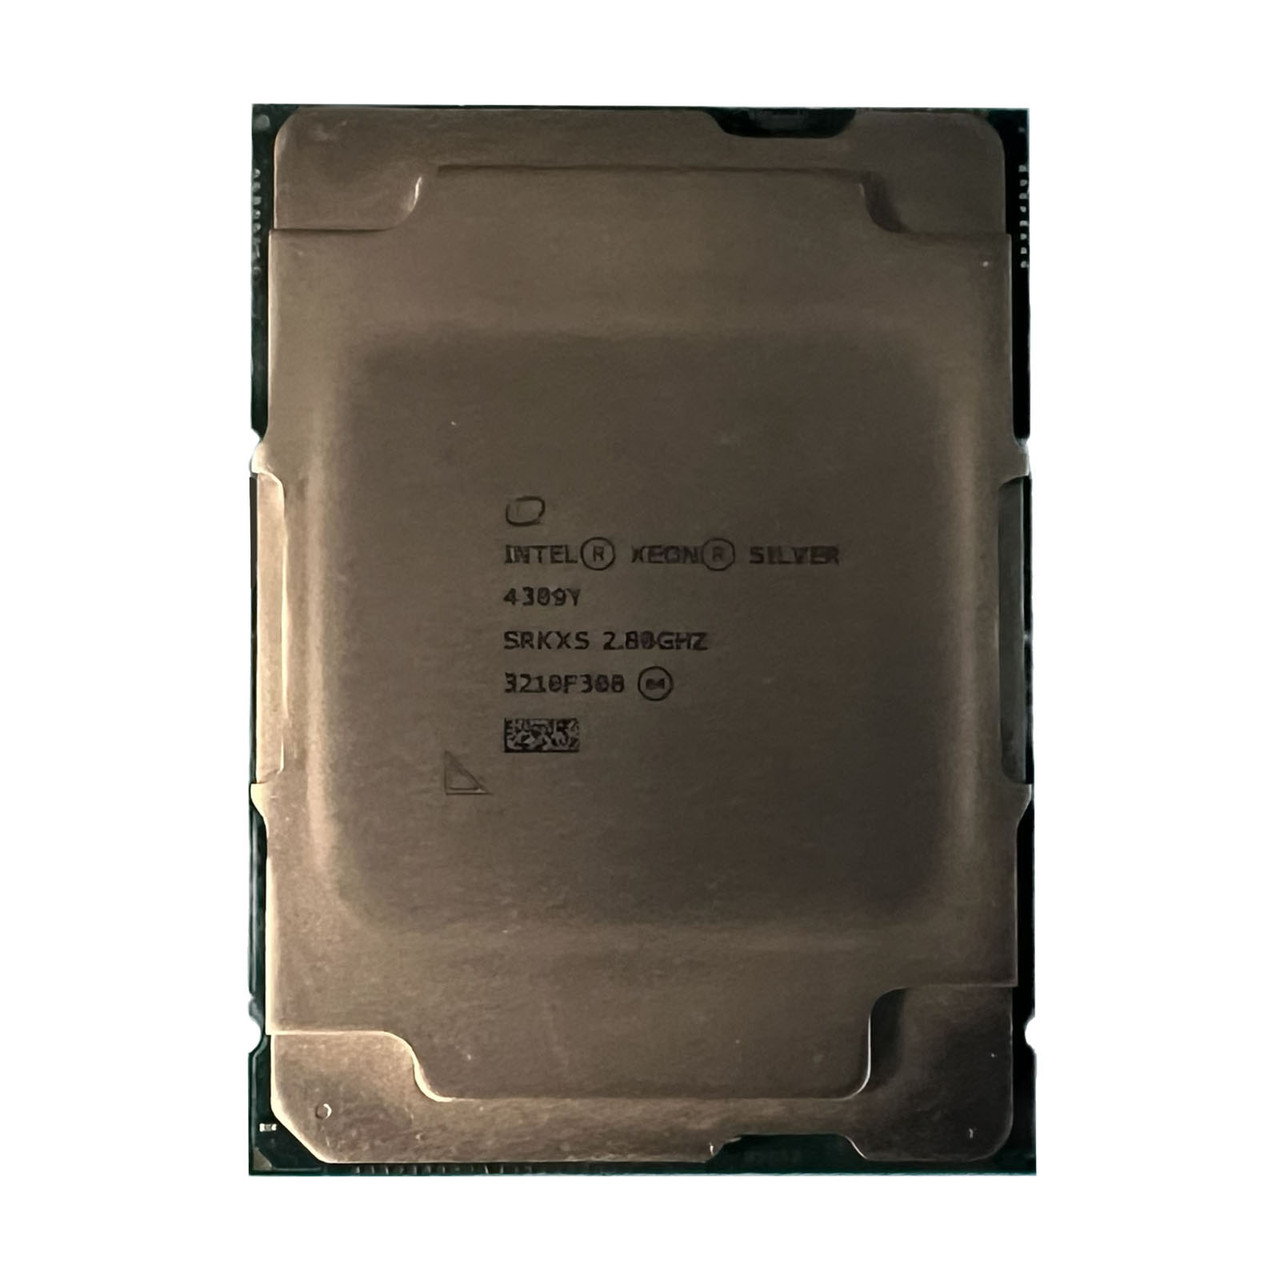 Intel SRKXS Xeon Silver 4309Y 8C 2.60GHz 12MB Processor